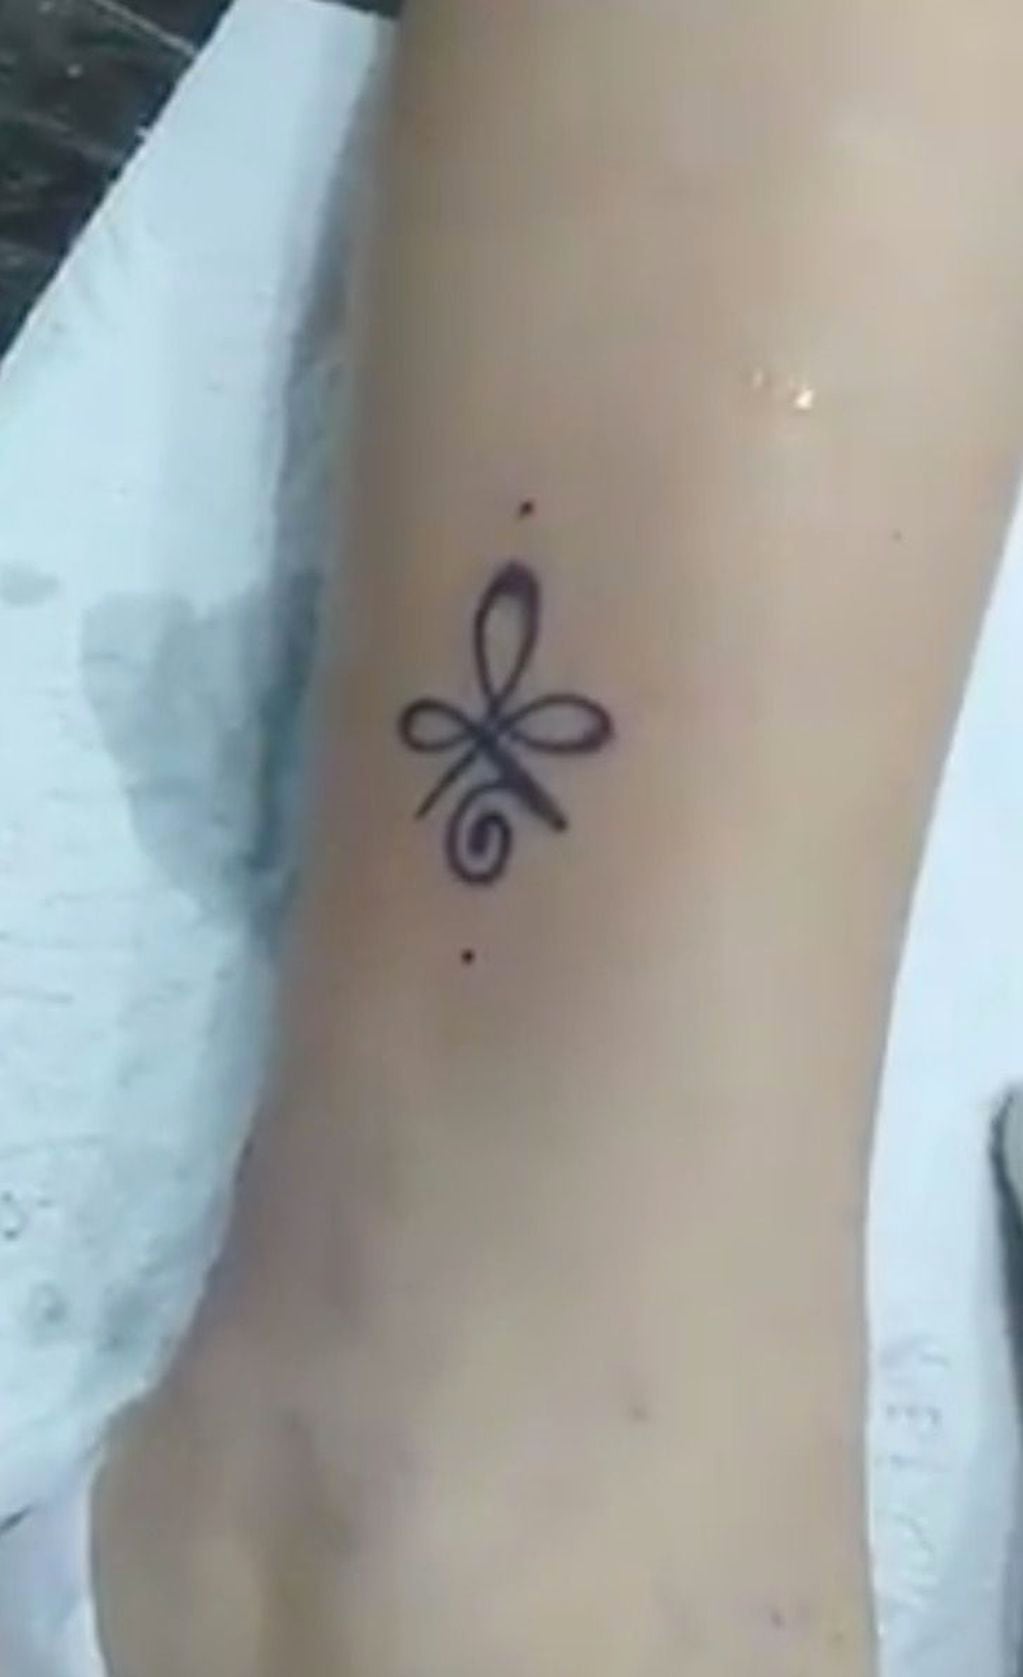 El resultado del tatuaje que fue realizado en la pierna de la niña.